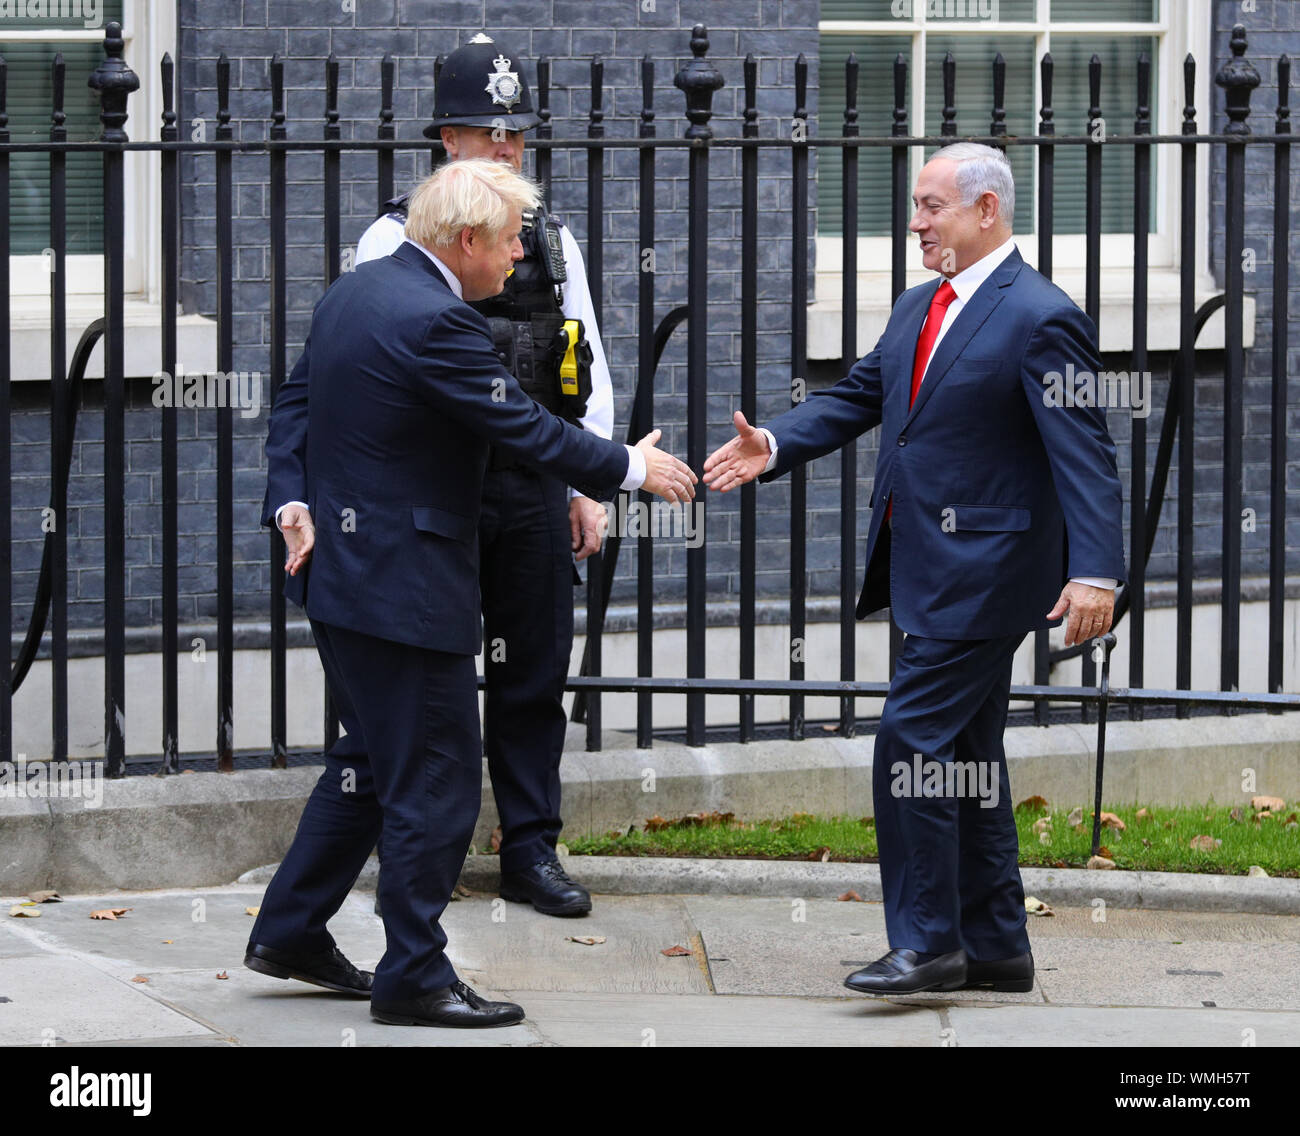 Premier ministre Boris Johnson accueille le Premier ministre israélien Benjamin Netanyahu à l'extérieur de 10 Downing Street, Londres. Banque D'Images